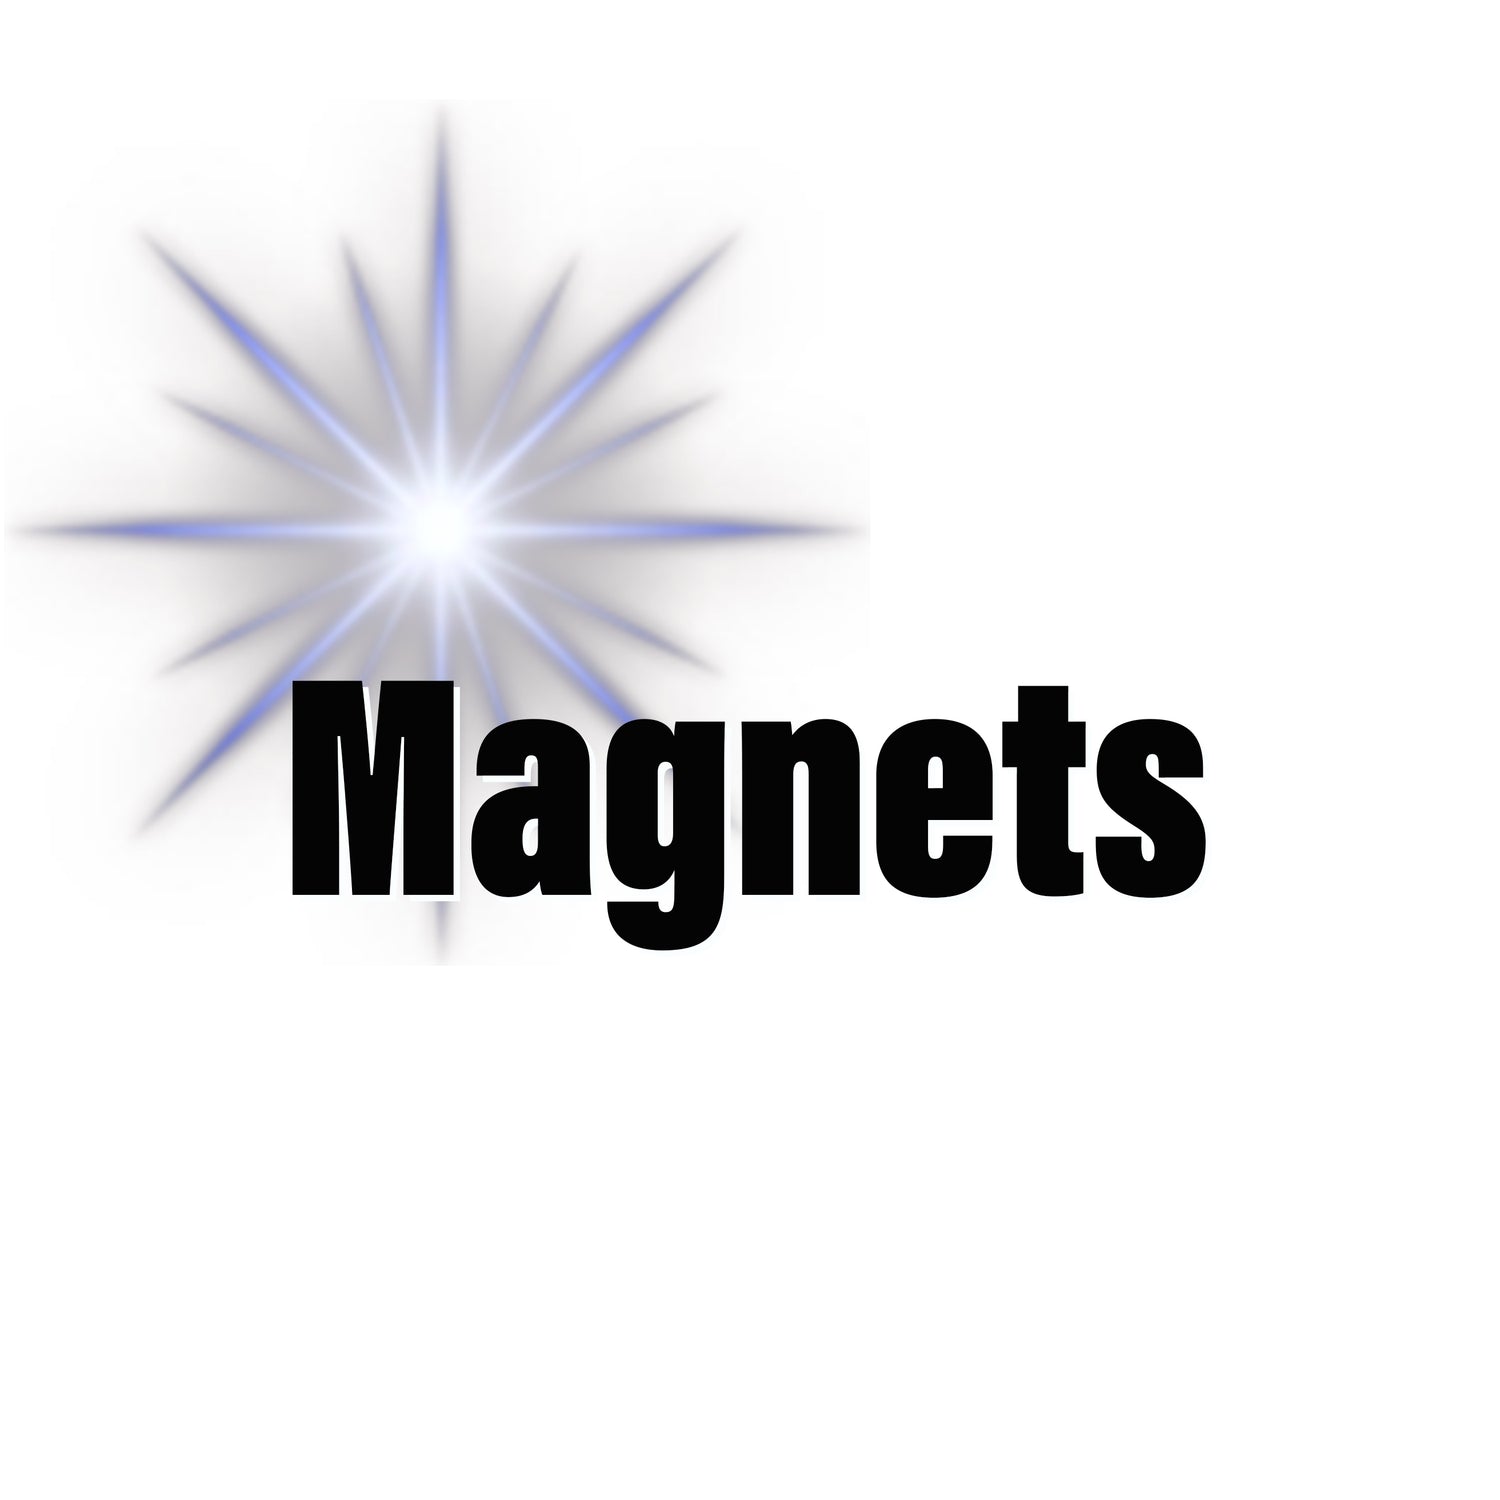 Magnet Ignite